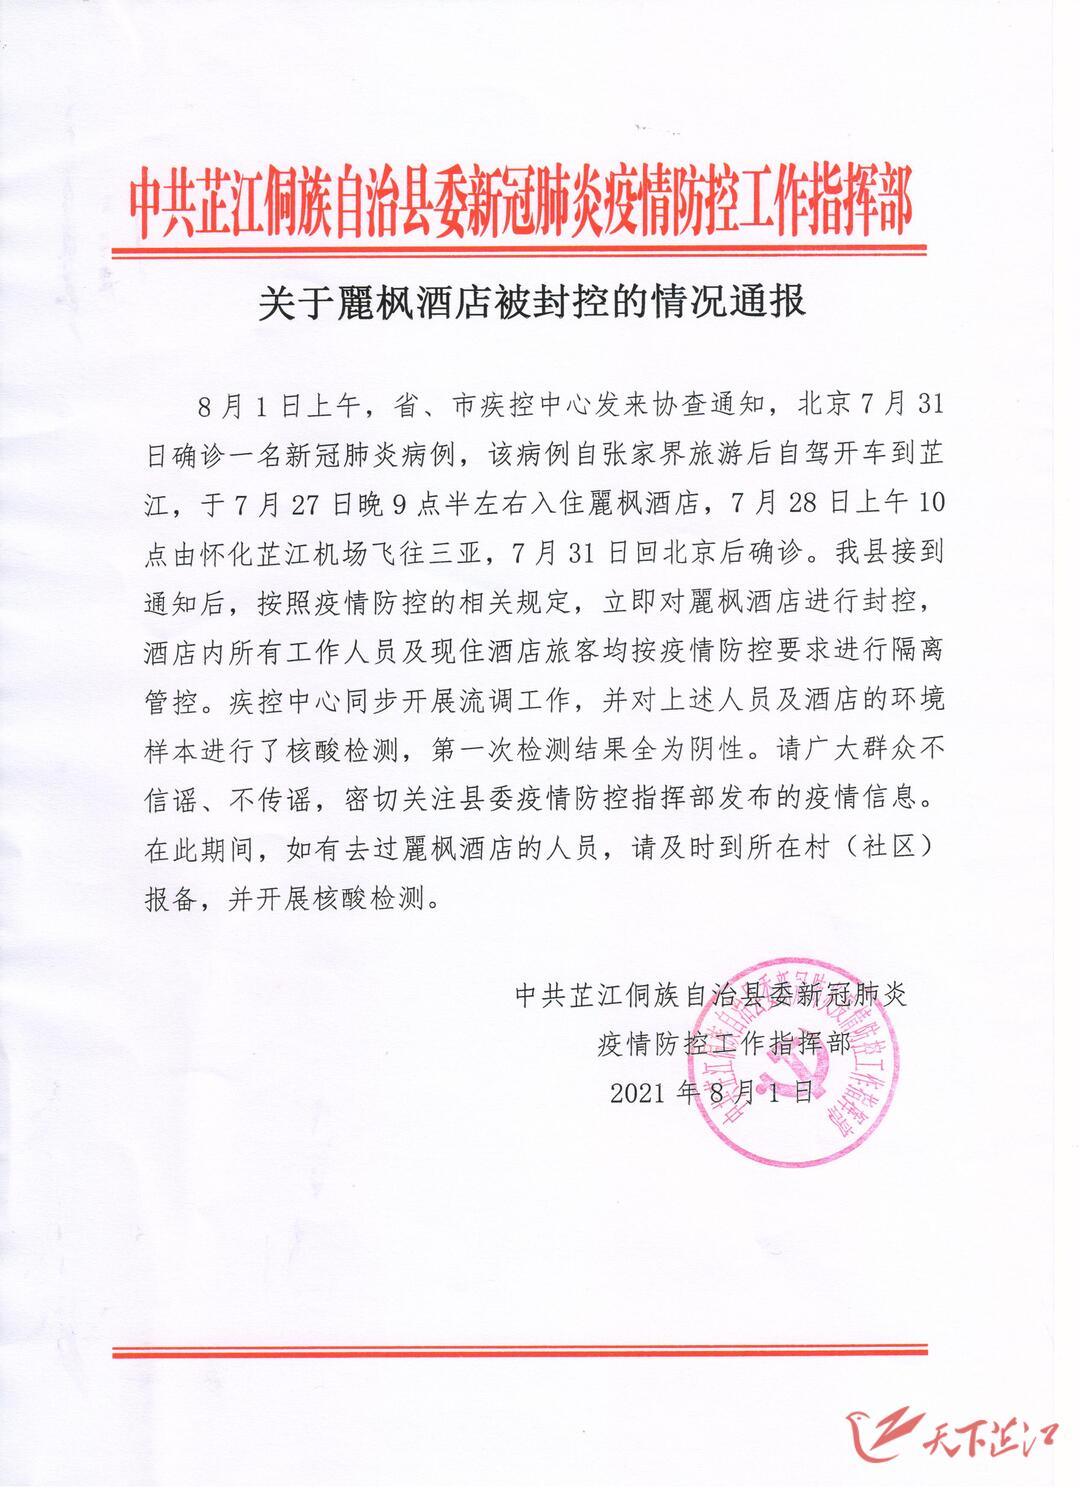 中共芷江侗族自治县委新冠肺炎 疫情防控工作指挥部 2021年8月1日